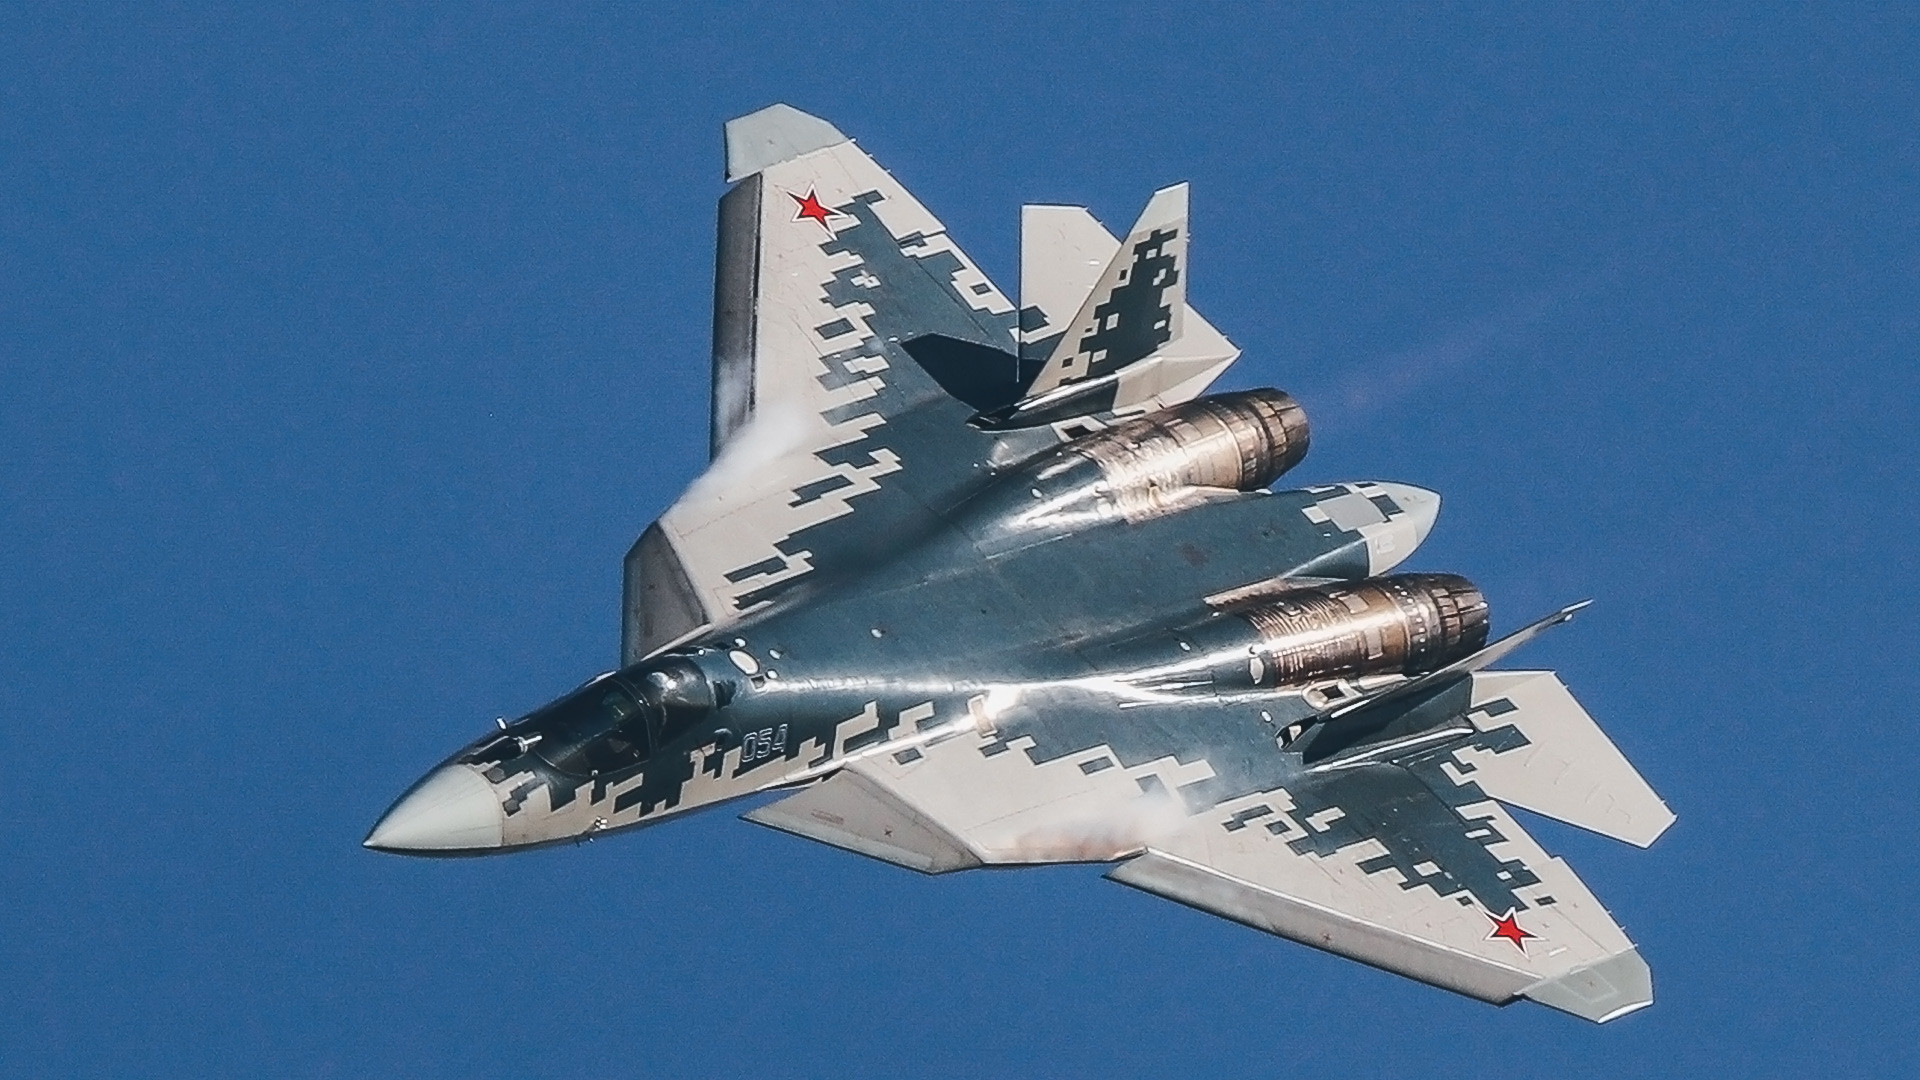 Su-57, ruski višenamjenski lovac pete generacije, demonstrira polijetanje na zrakoplovno-svemirskom  sajmu MAKS-2019 u Žukovskom.
